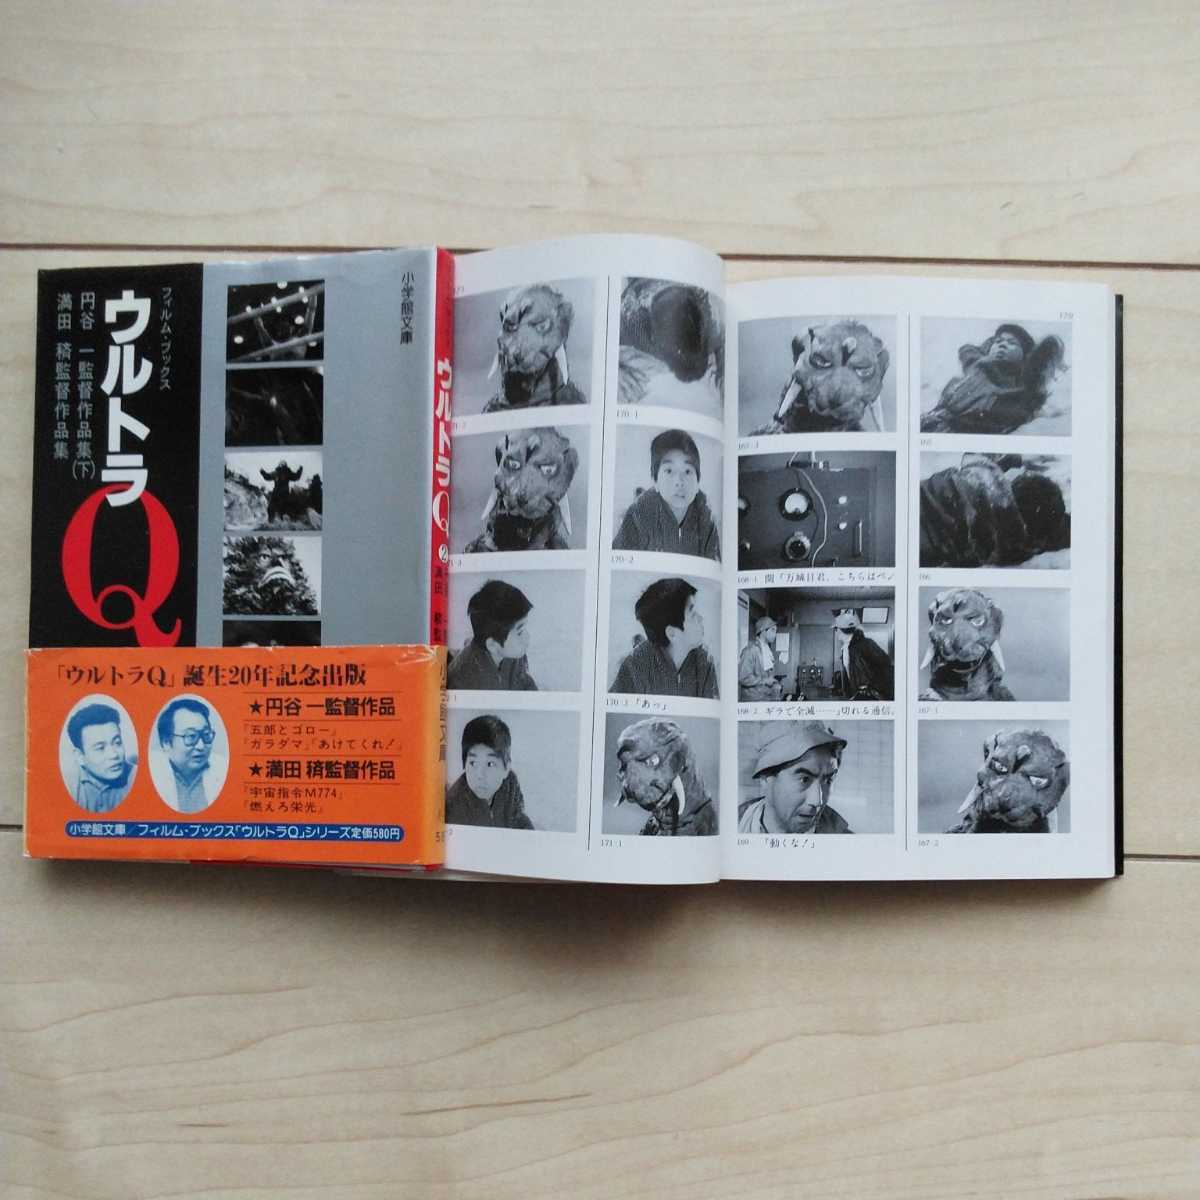 ■FilmBooks『ウルトラＱ』全7冊揃。昭和59/60年初版カバー(2冊帯欠)。小学館文庫。TBSで放送した実写映像が齣送りで愉しめます。_画像6